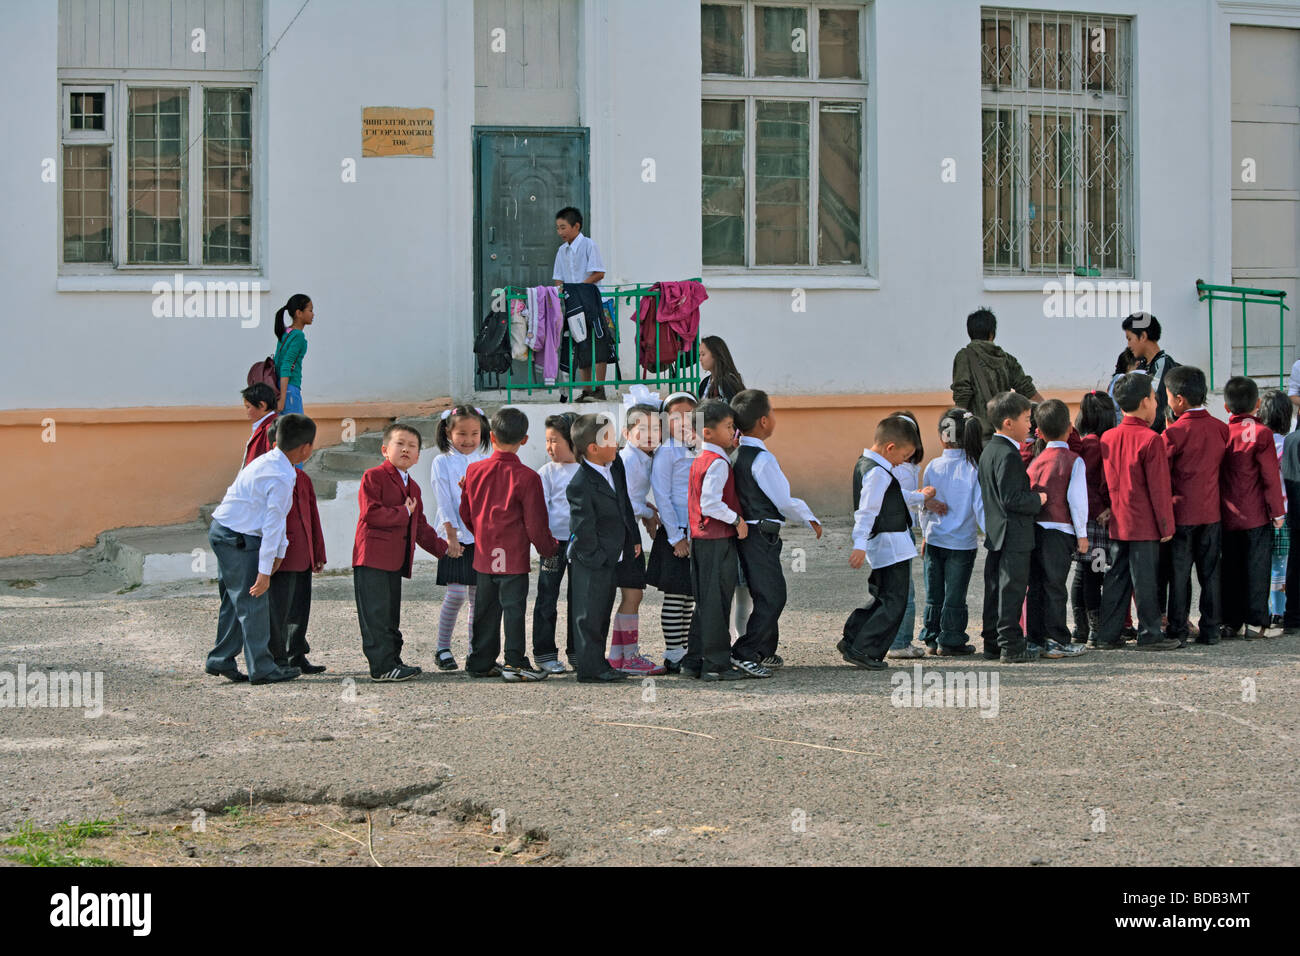 Les écoliers mongols jouent en attente dans une ligne, Oulan-Bator, Mongolie Banque D'Images